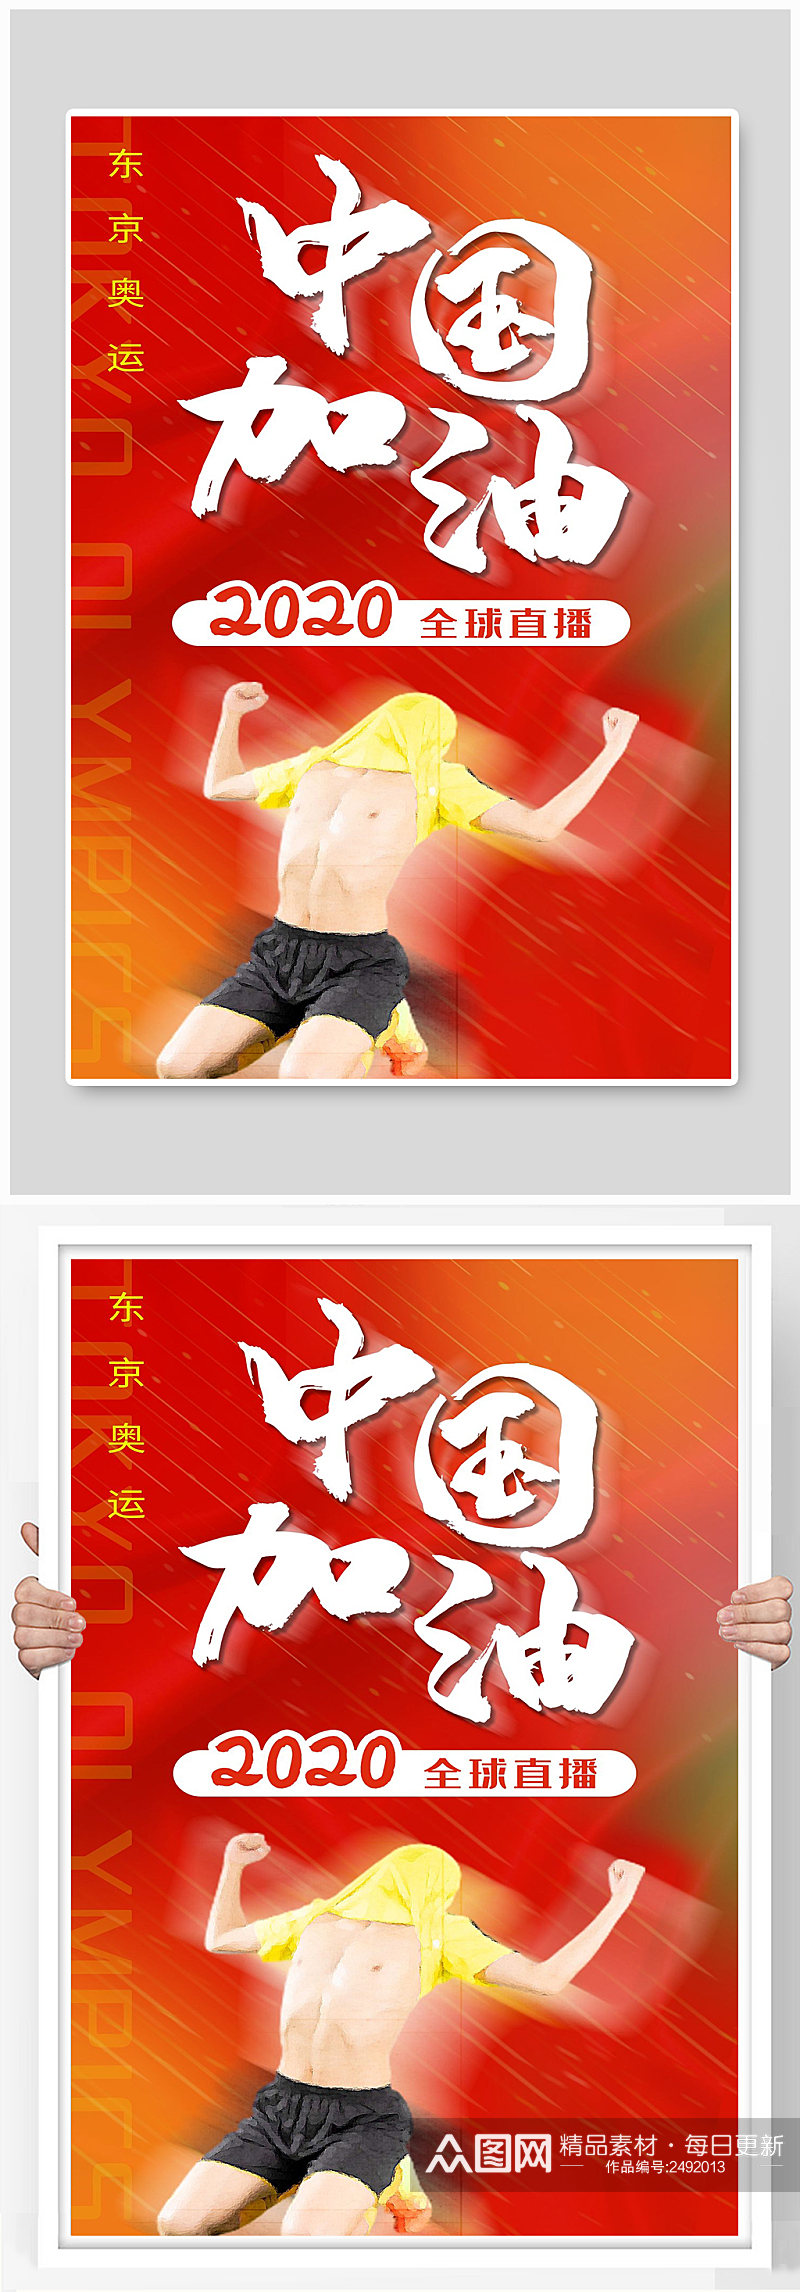 中国加油宣传海报设计素材